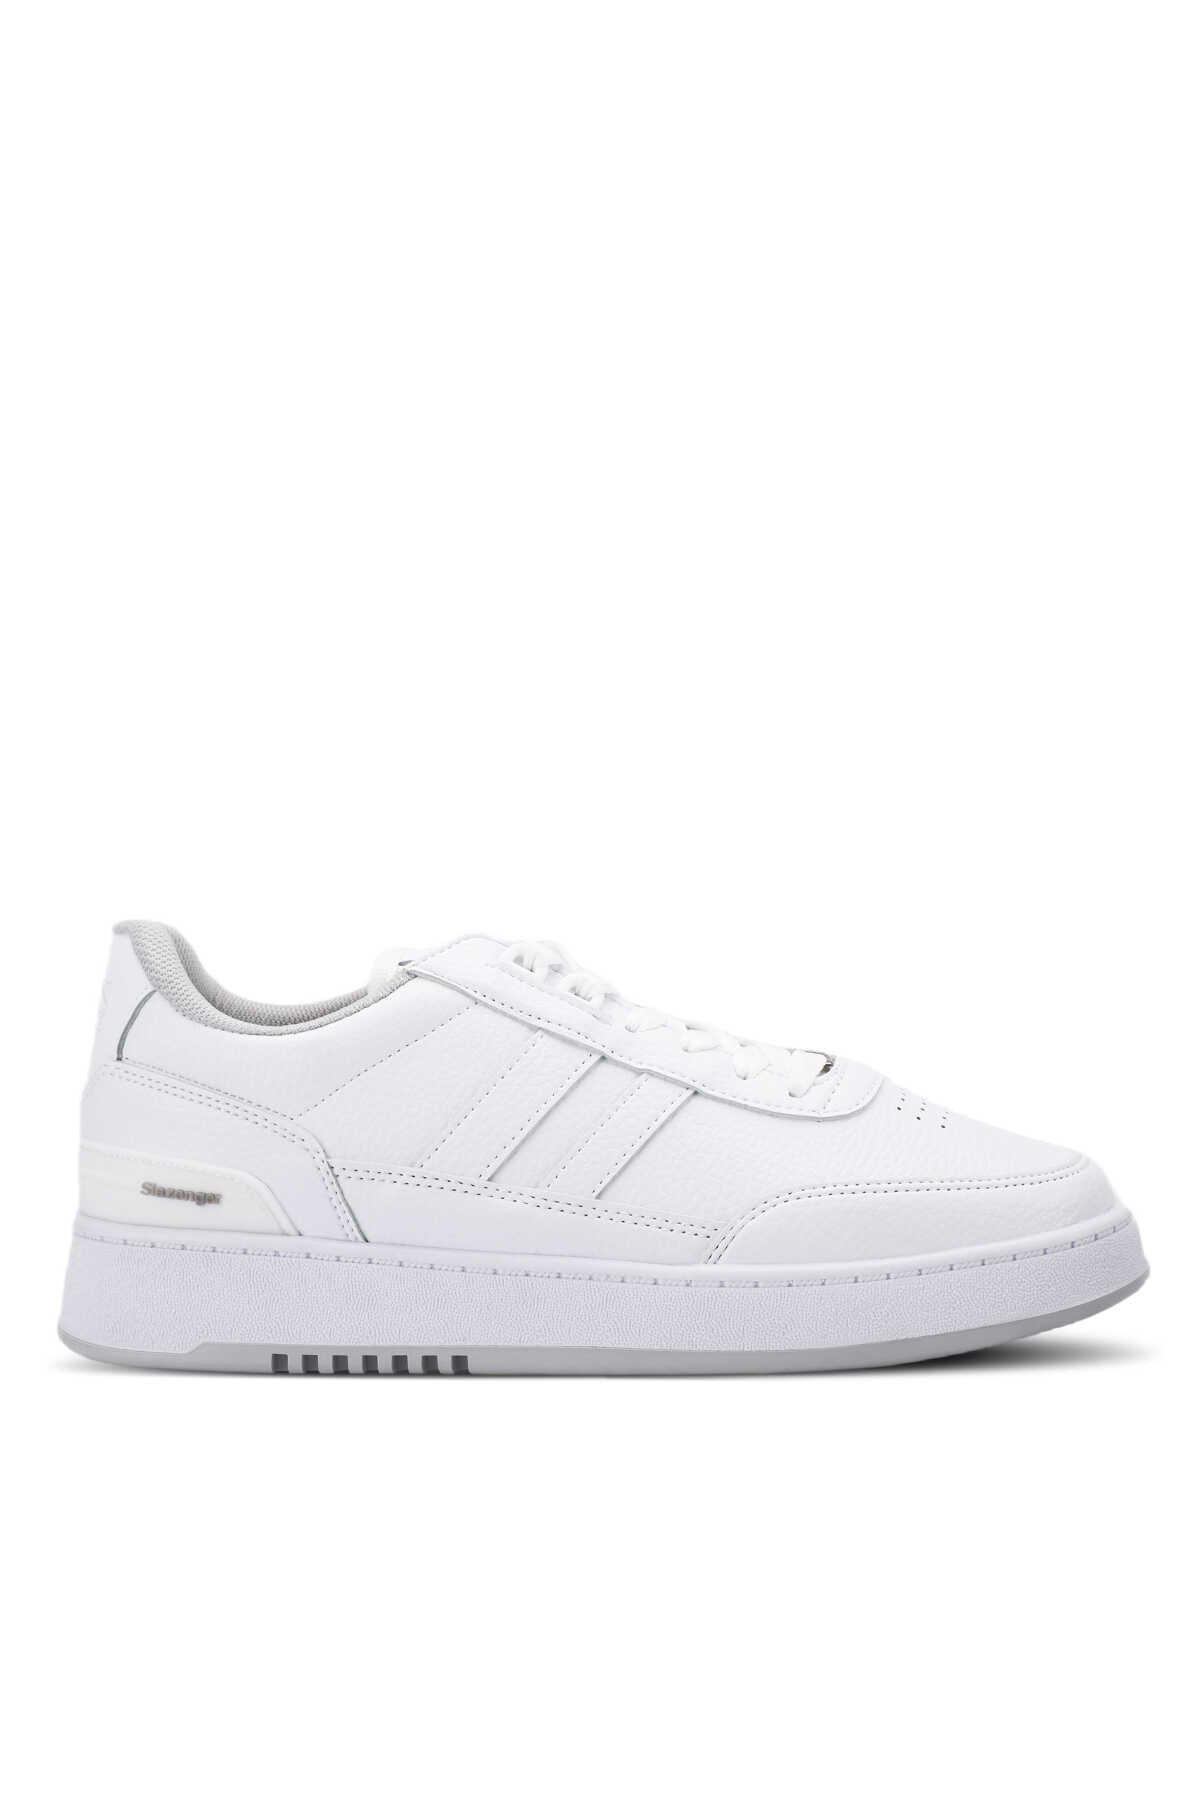 Slazenger - Slazenger DAPHNE Sneaker Erkek Ayakkabı Beyaz